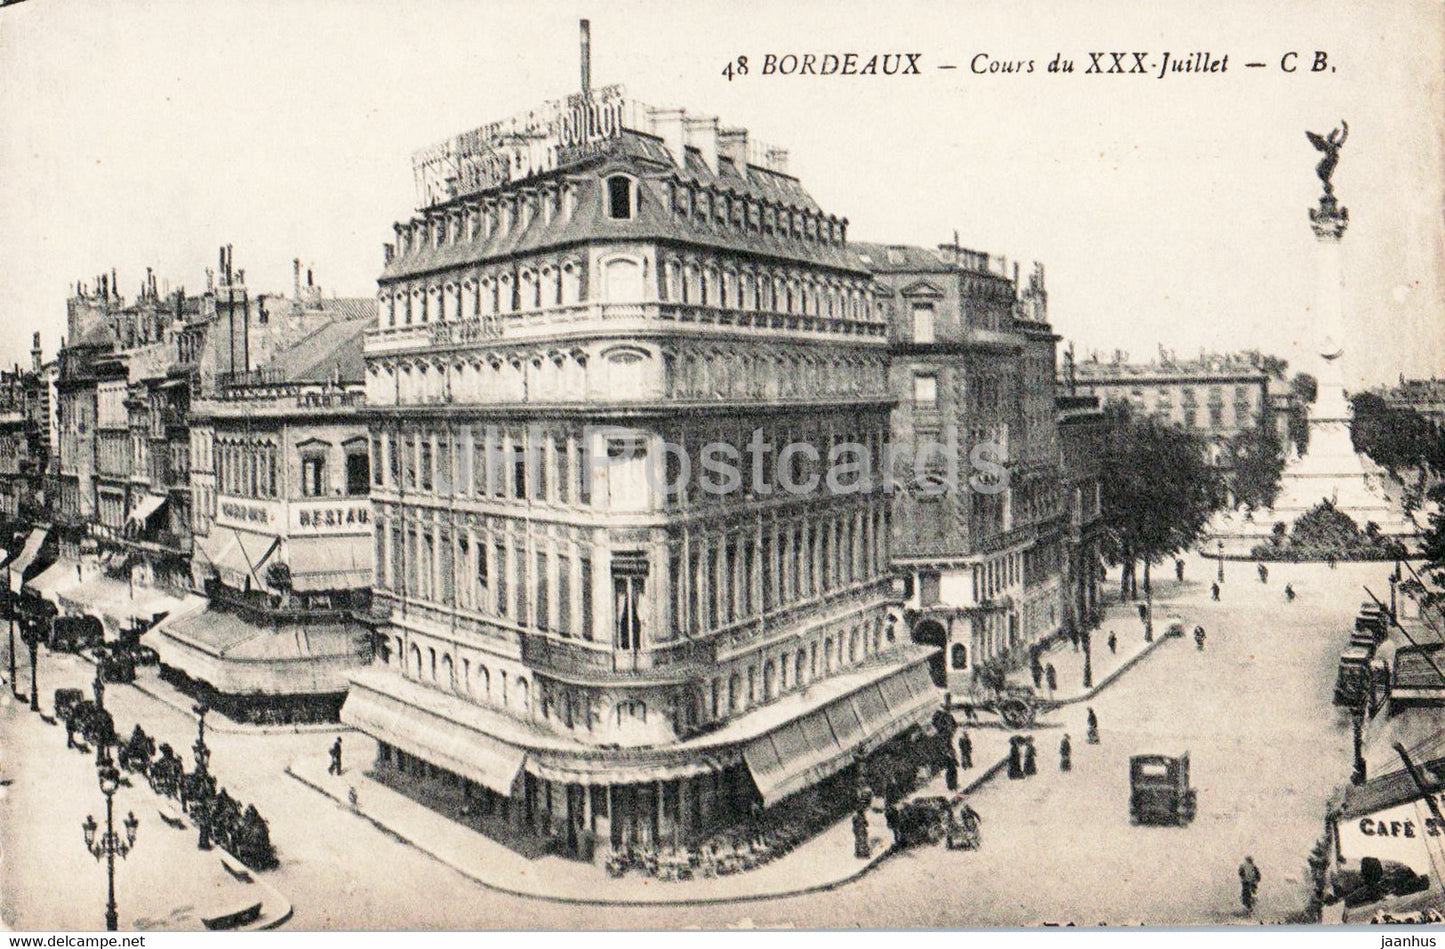 Bordeaux - Cours du XXX Juillet - 48 - old postcard - France - unused - JH Postcards